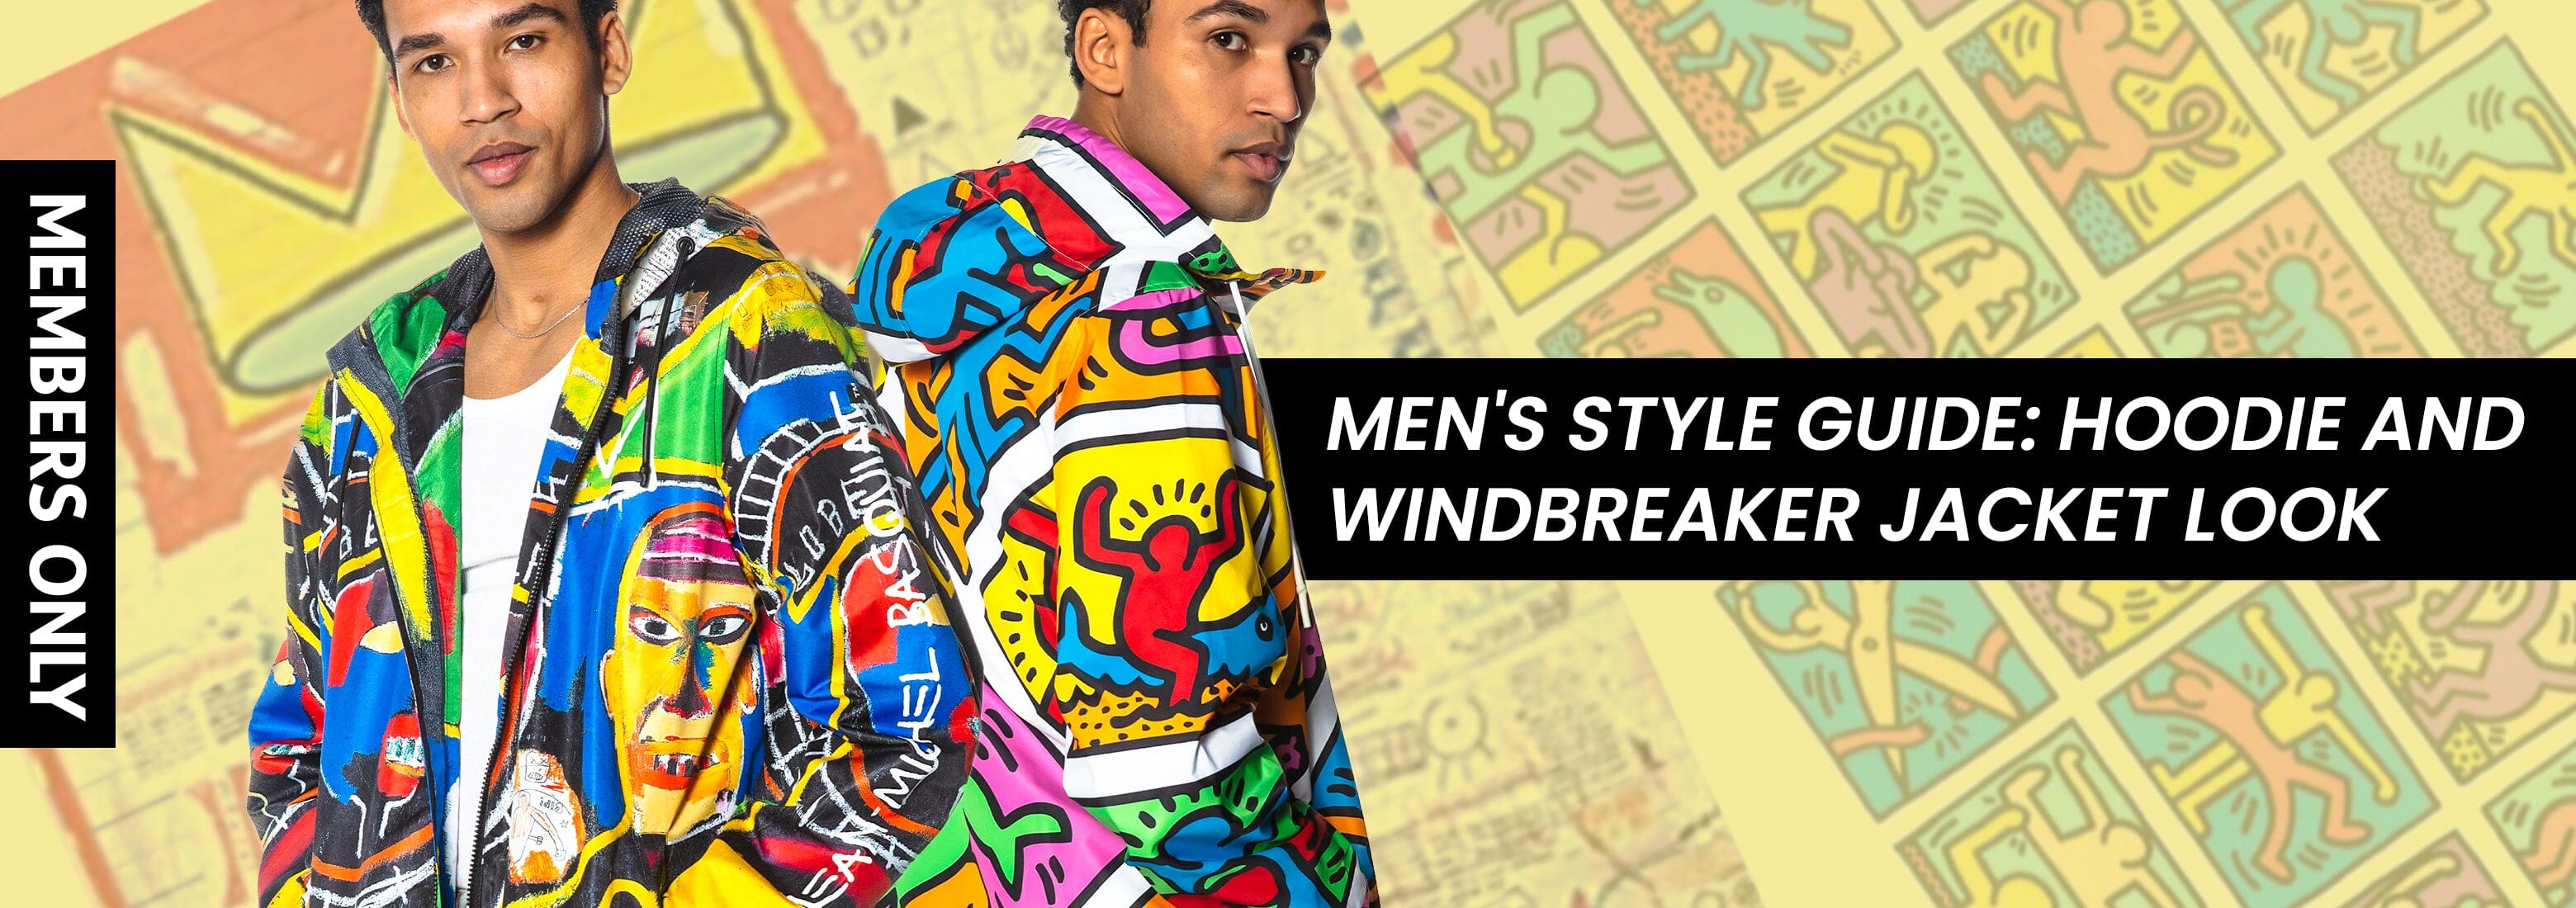 Men's Style Guide: Hoodie and Windbreaker Jacket Look